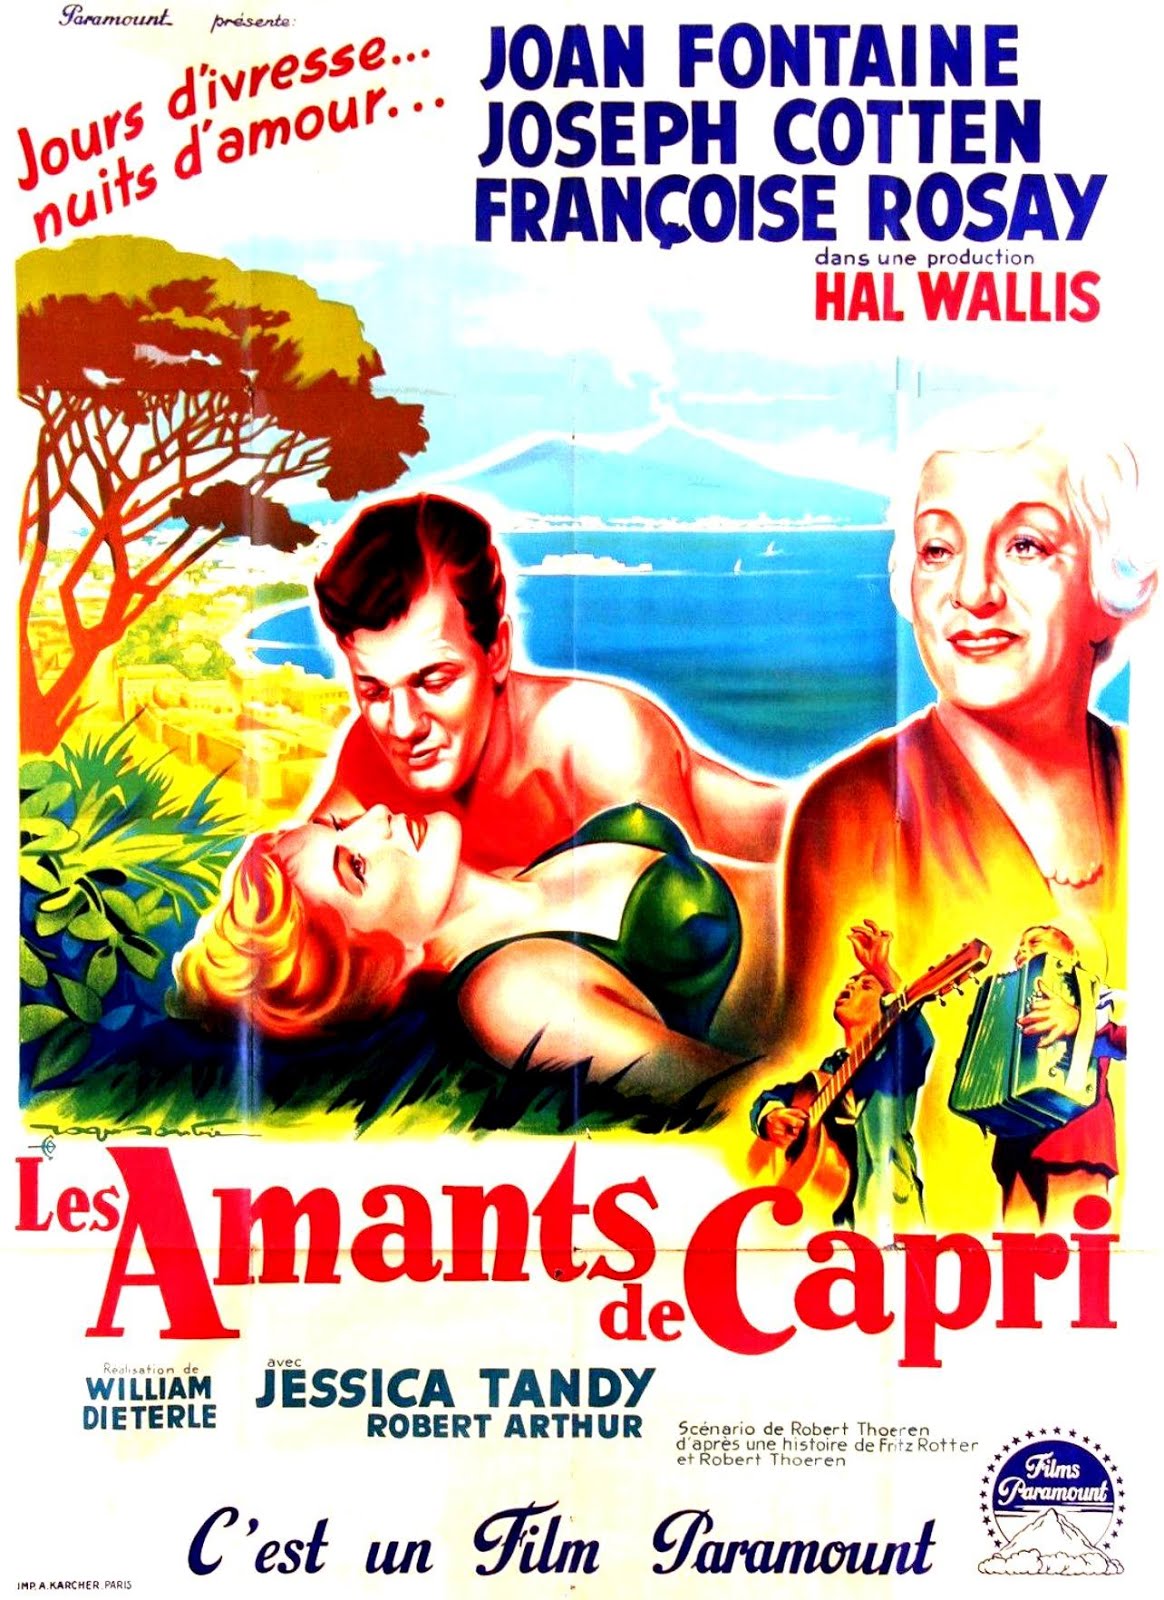 Les amants de Capri (1949) William Dieterle - September affair (01.08.1949 / 19.12.1949)